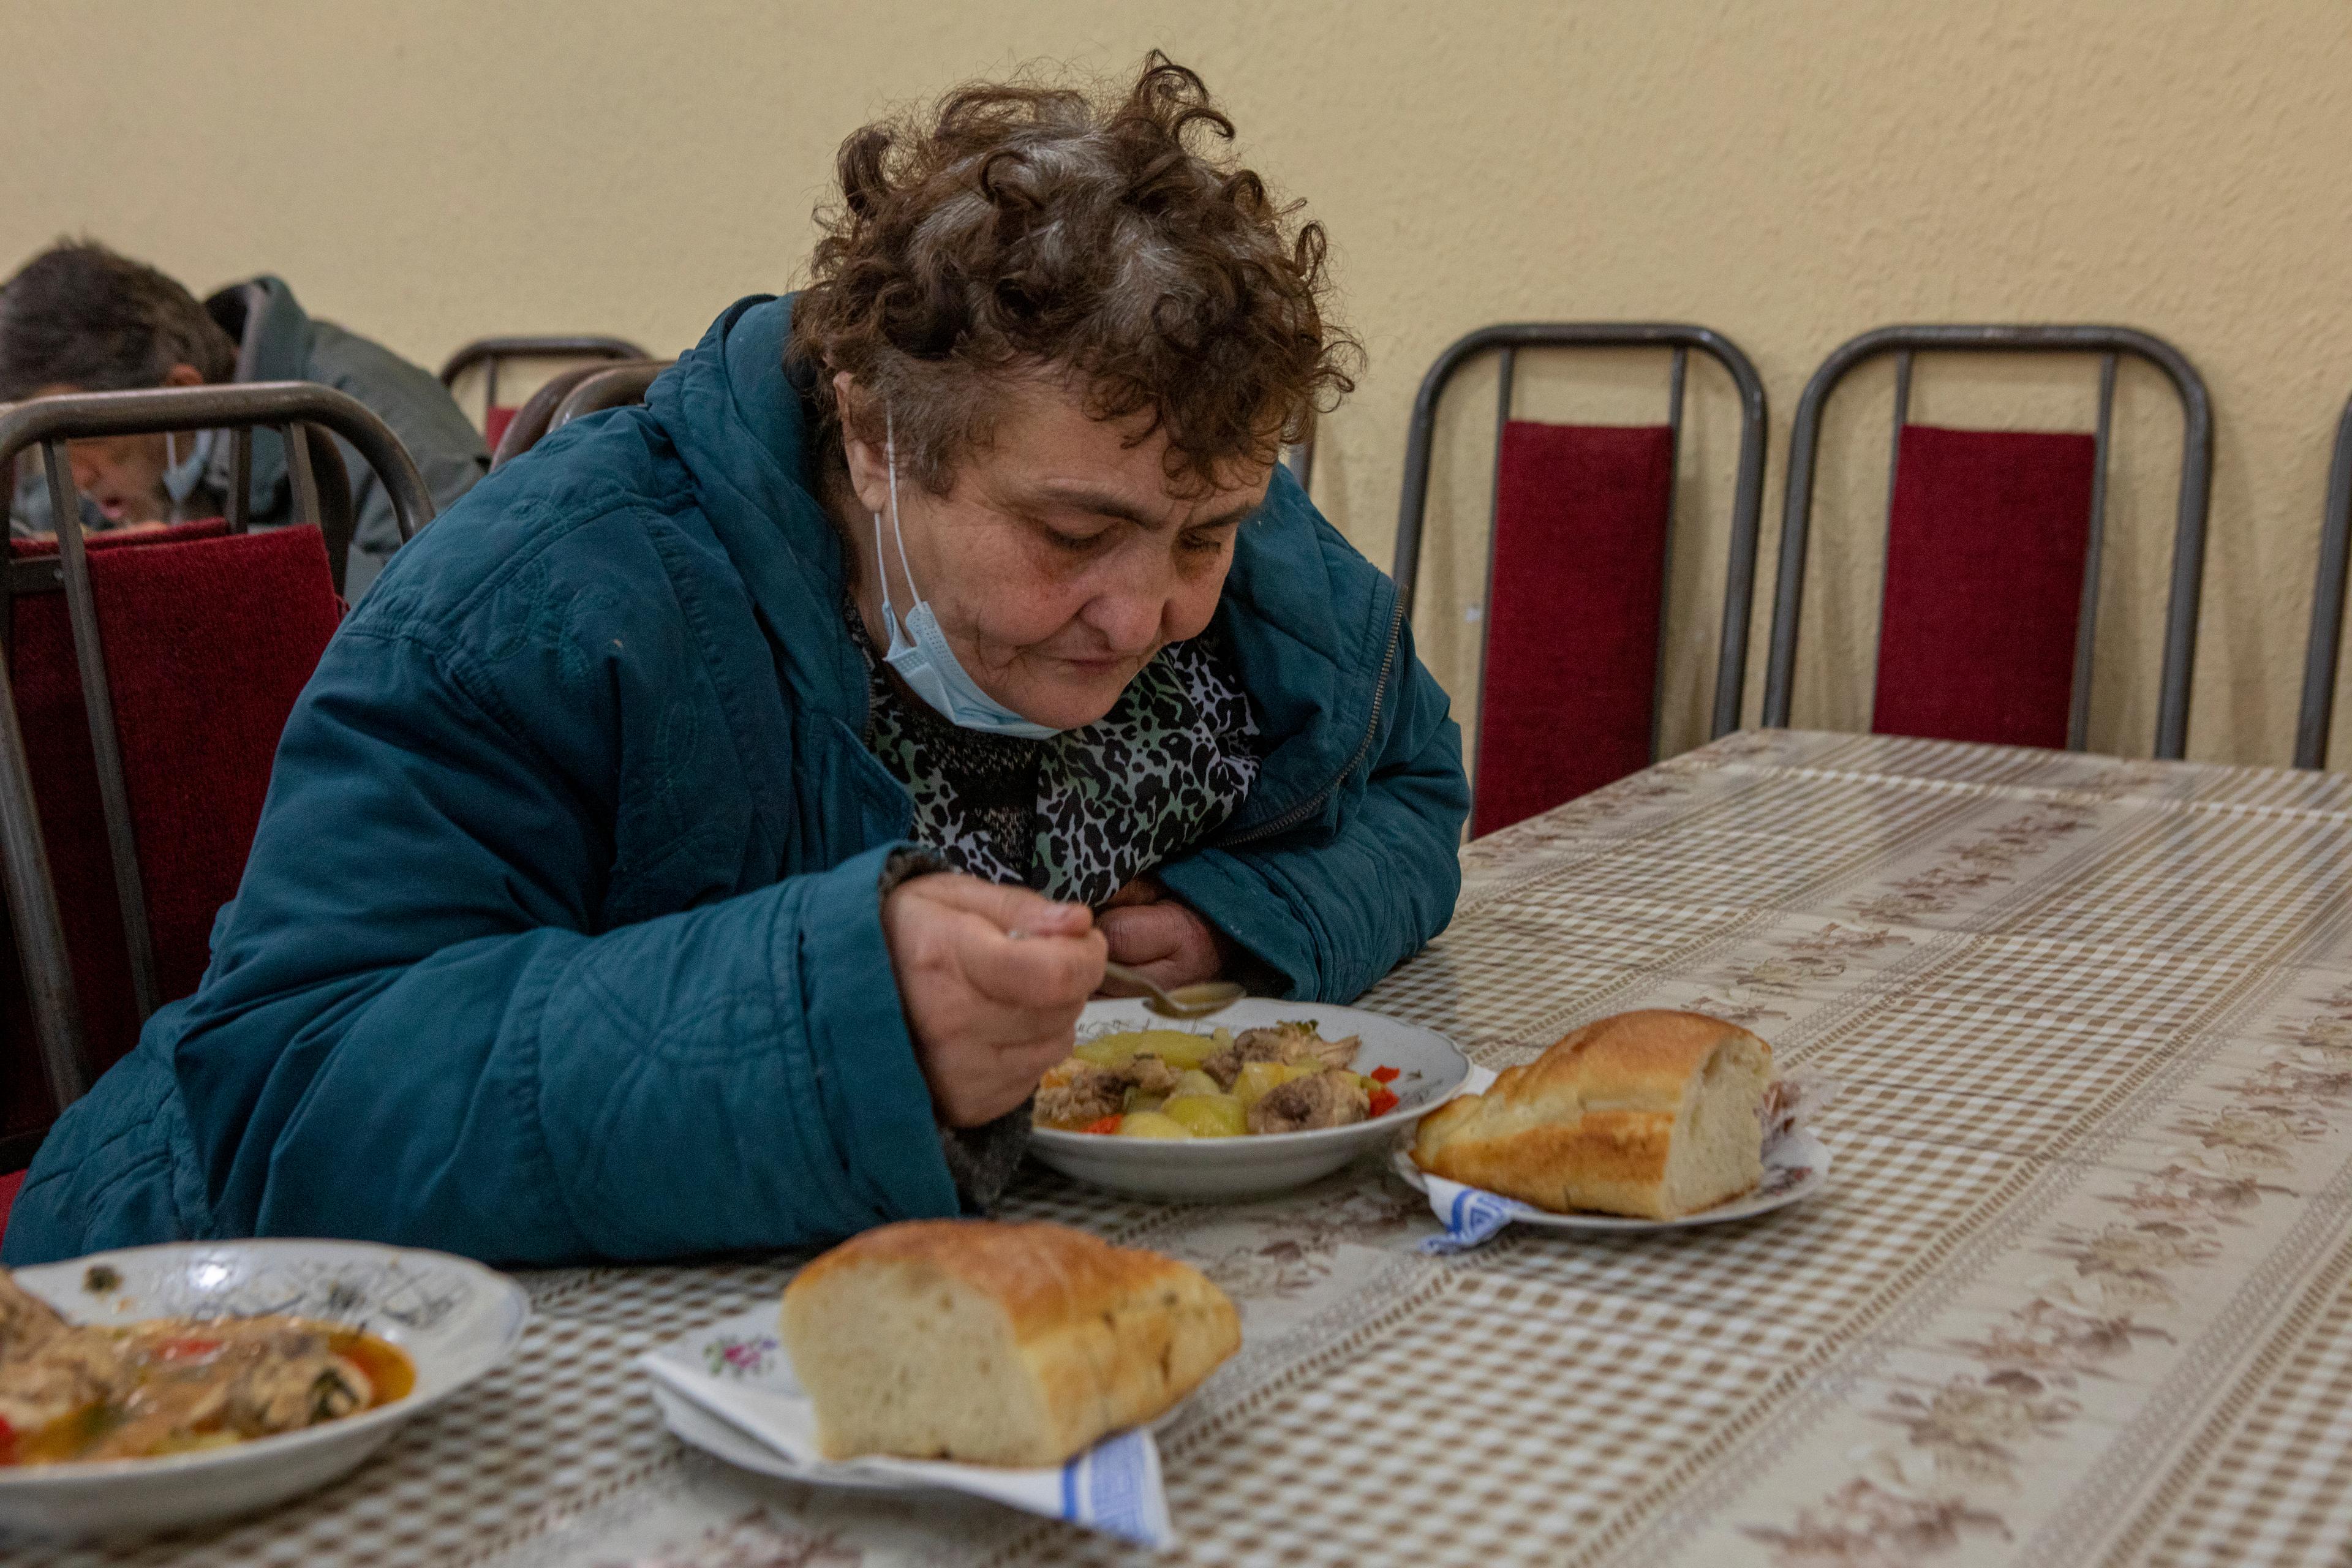 La donna è seduta a un tavolo e consuma un pasto della mensa dei poveri.